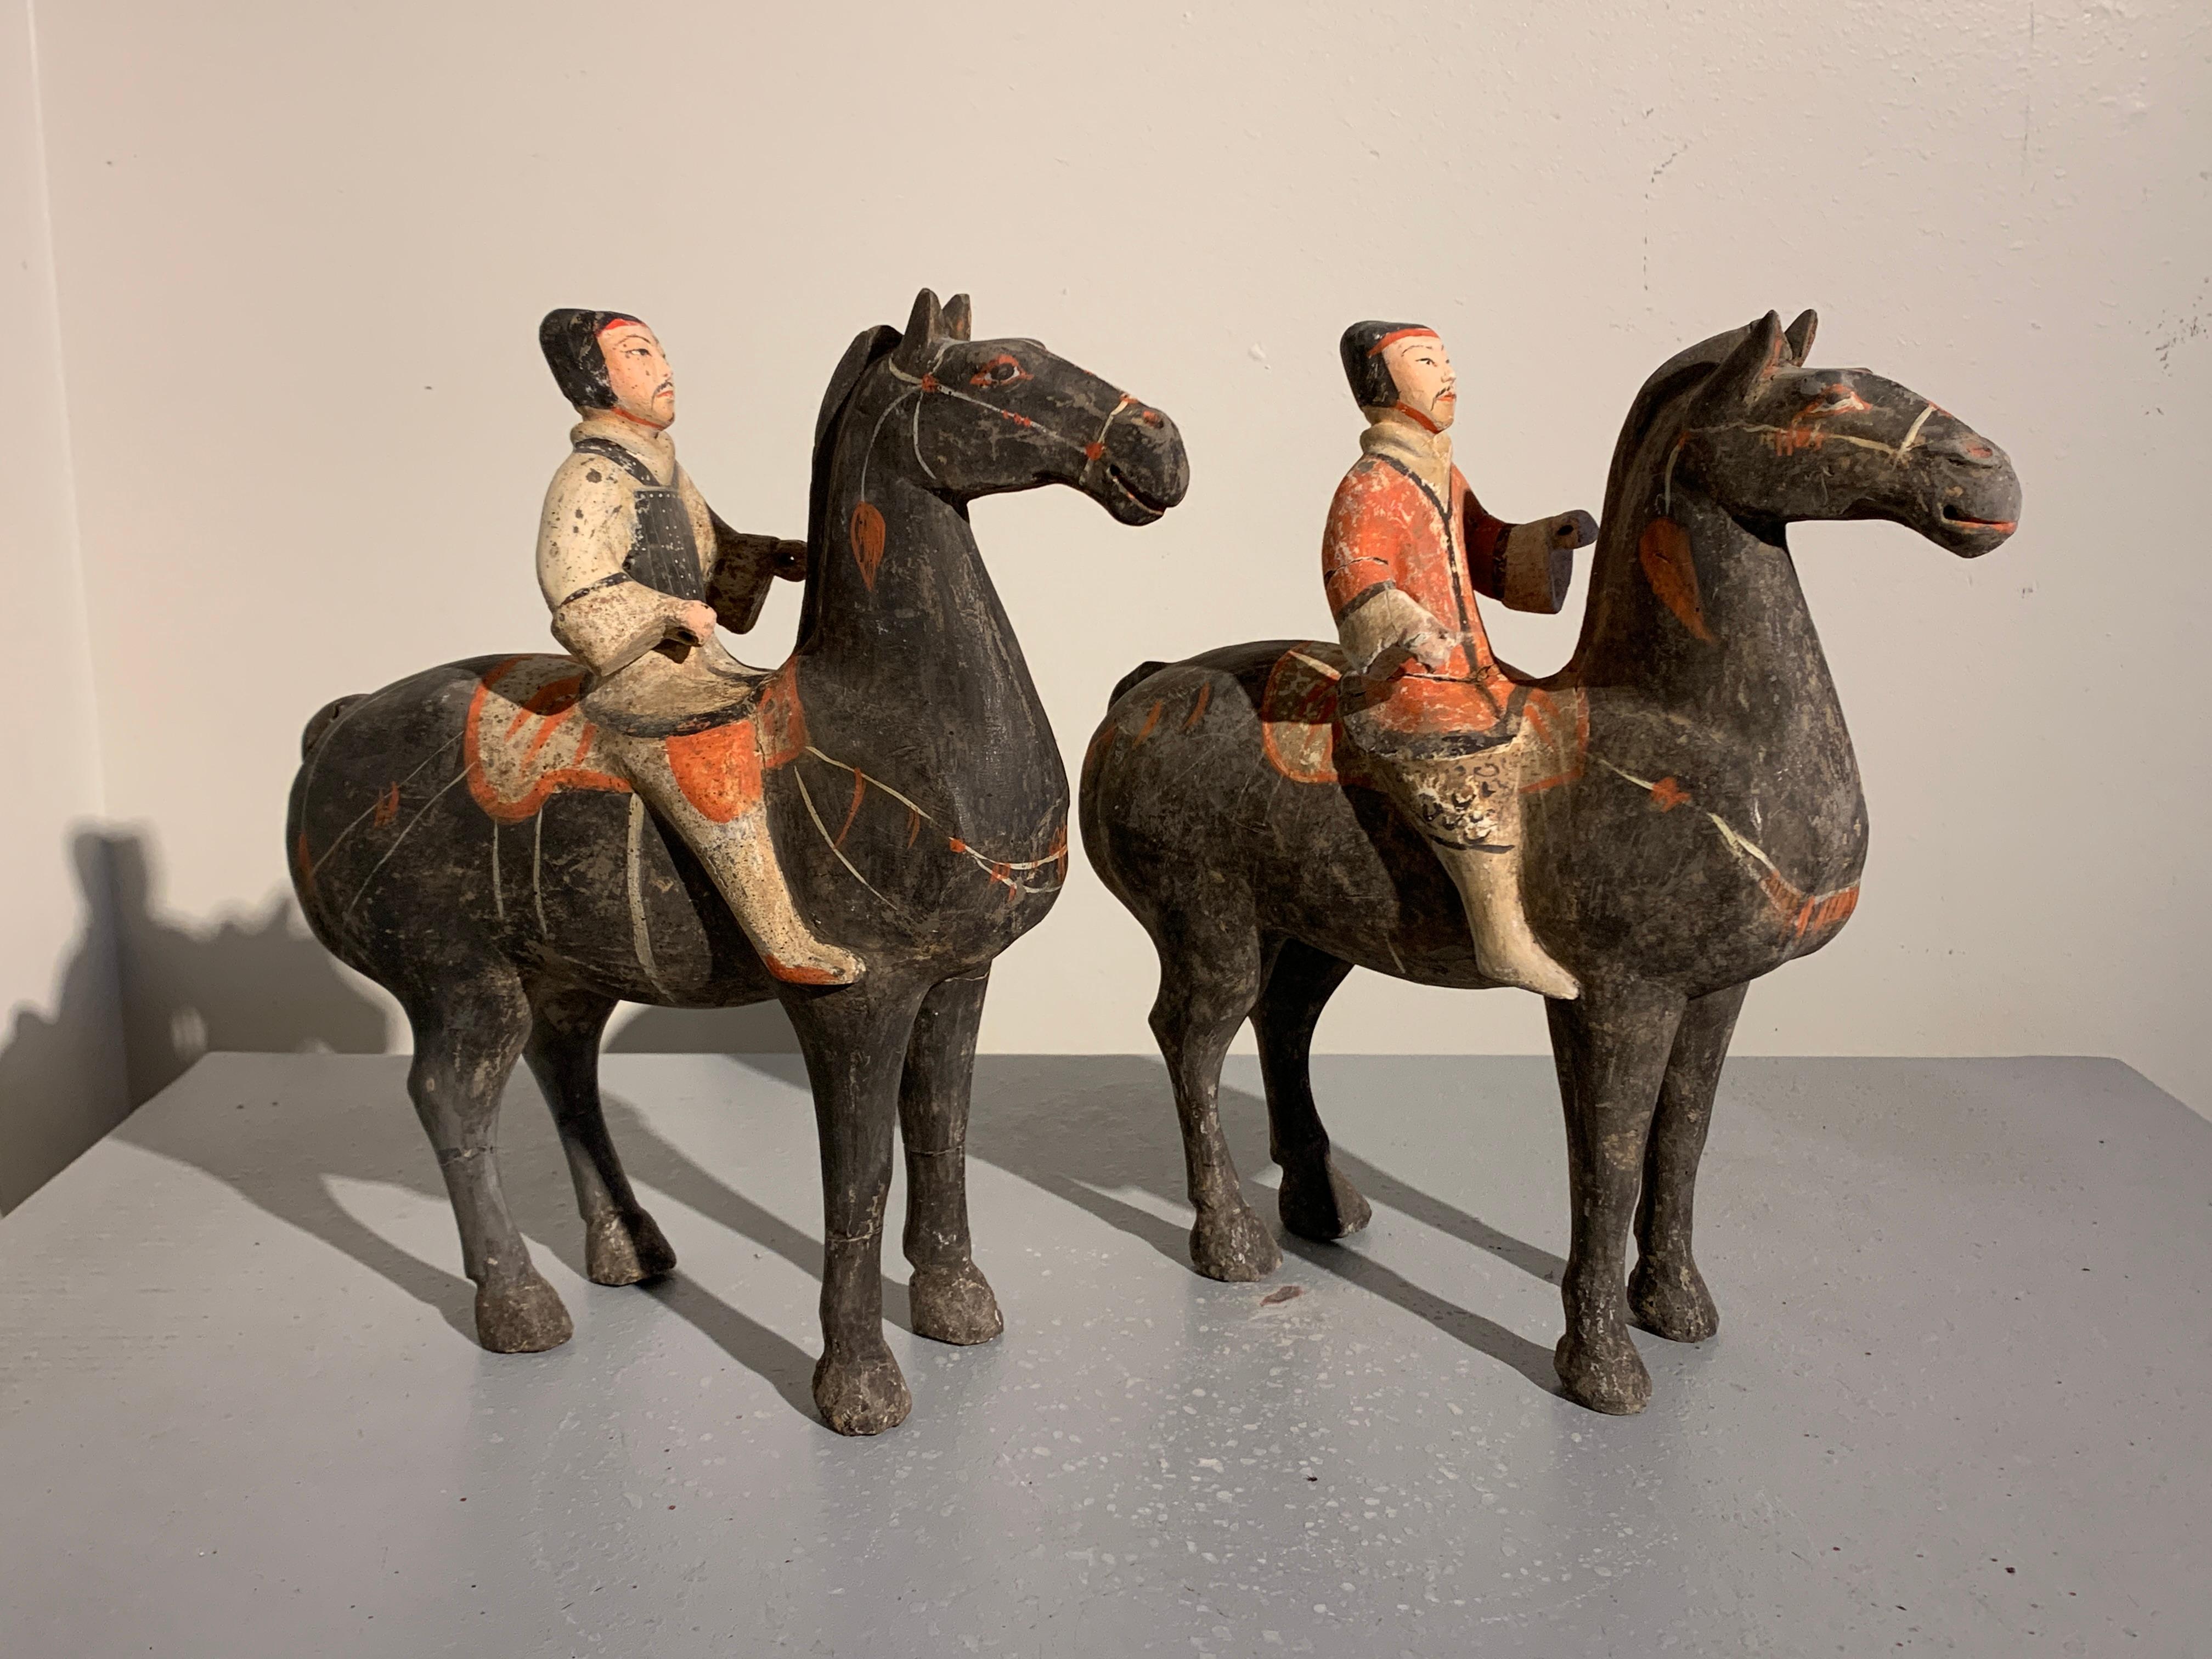 Paire de chevaux et cavaliers en poterie peinte de la dynastie Han (206 av. J.-C. - 220 apr. J.-C.), Chine.

Les chevaux modélisés se tiennent debout à quatre pattes, soutenant leurs cavaliers. Les cavaliers sont en tenue militaire, l'un en